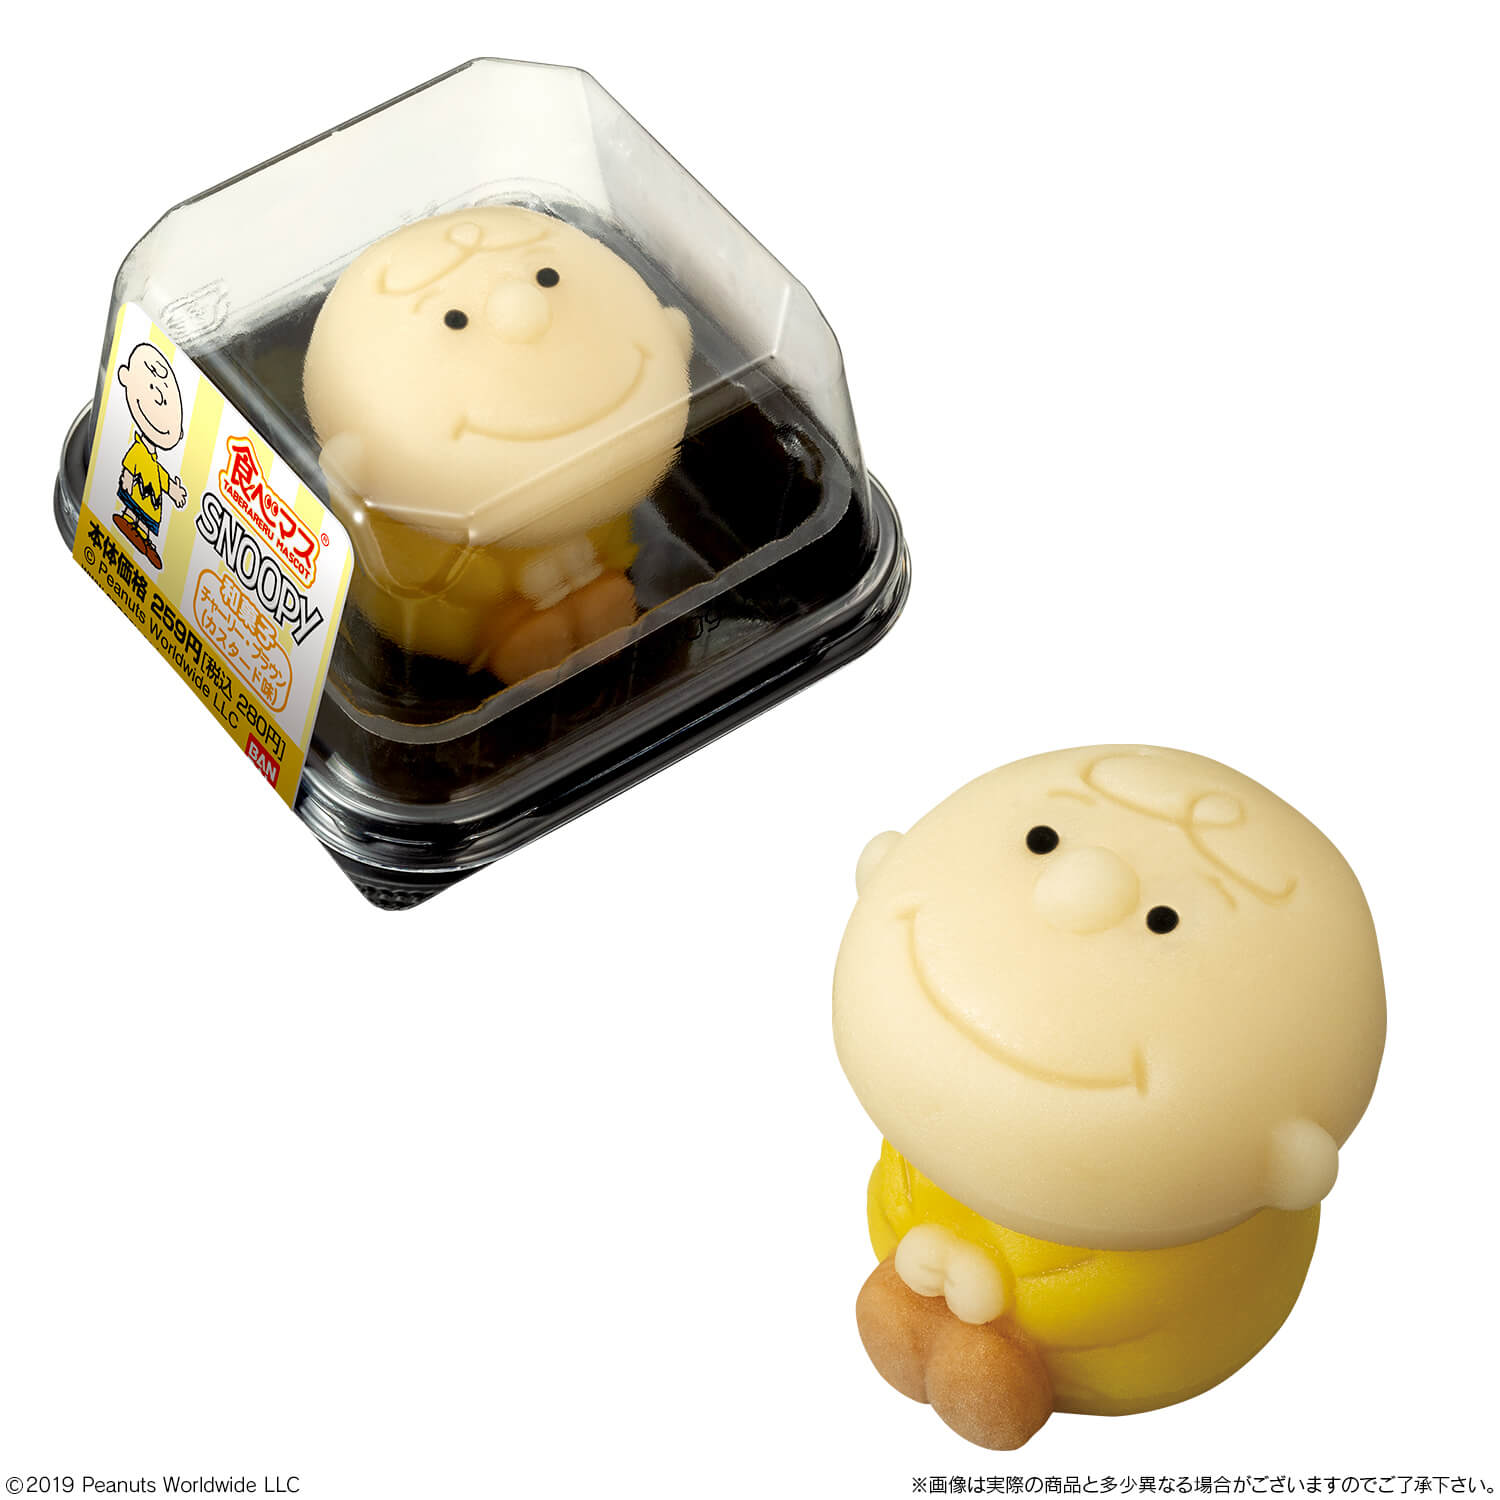 スヌーピー ジョー・クール チャーリー・ブラウン 和菓子 食べマス ローソン Snoopy Japanese sweets Tabemasu Lawson 4